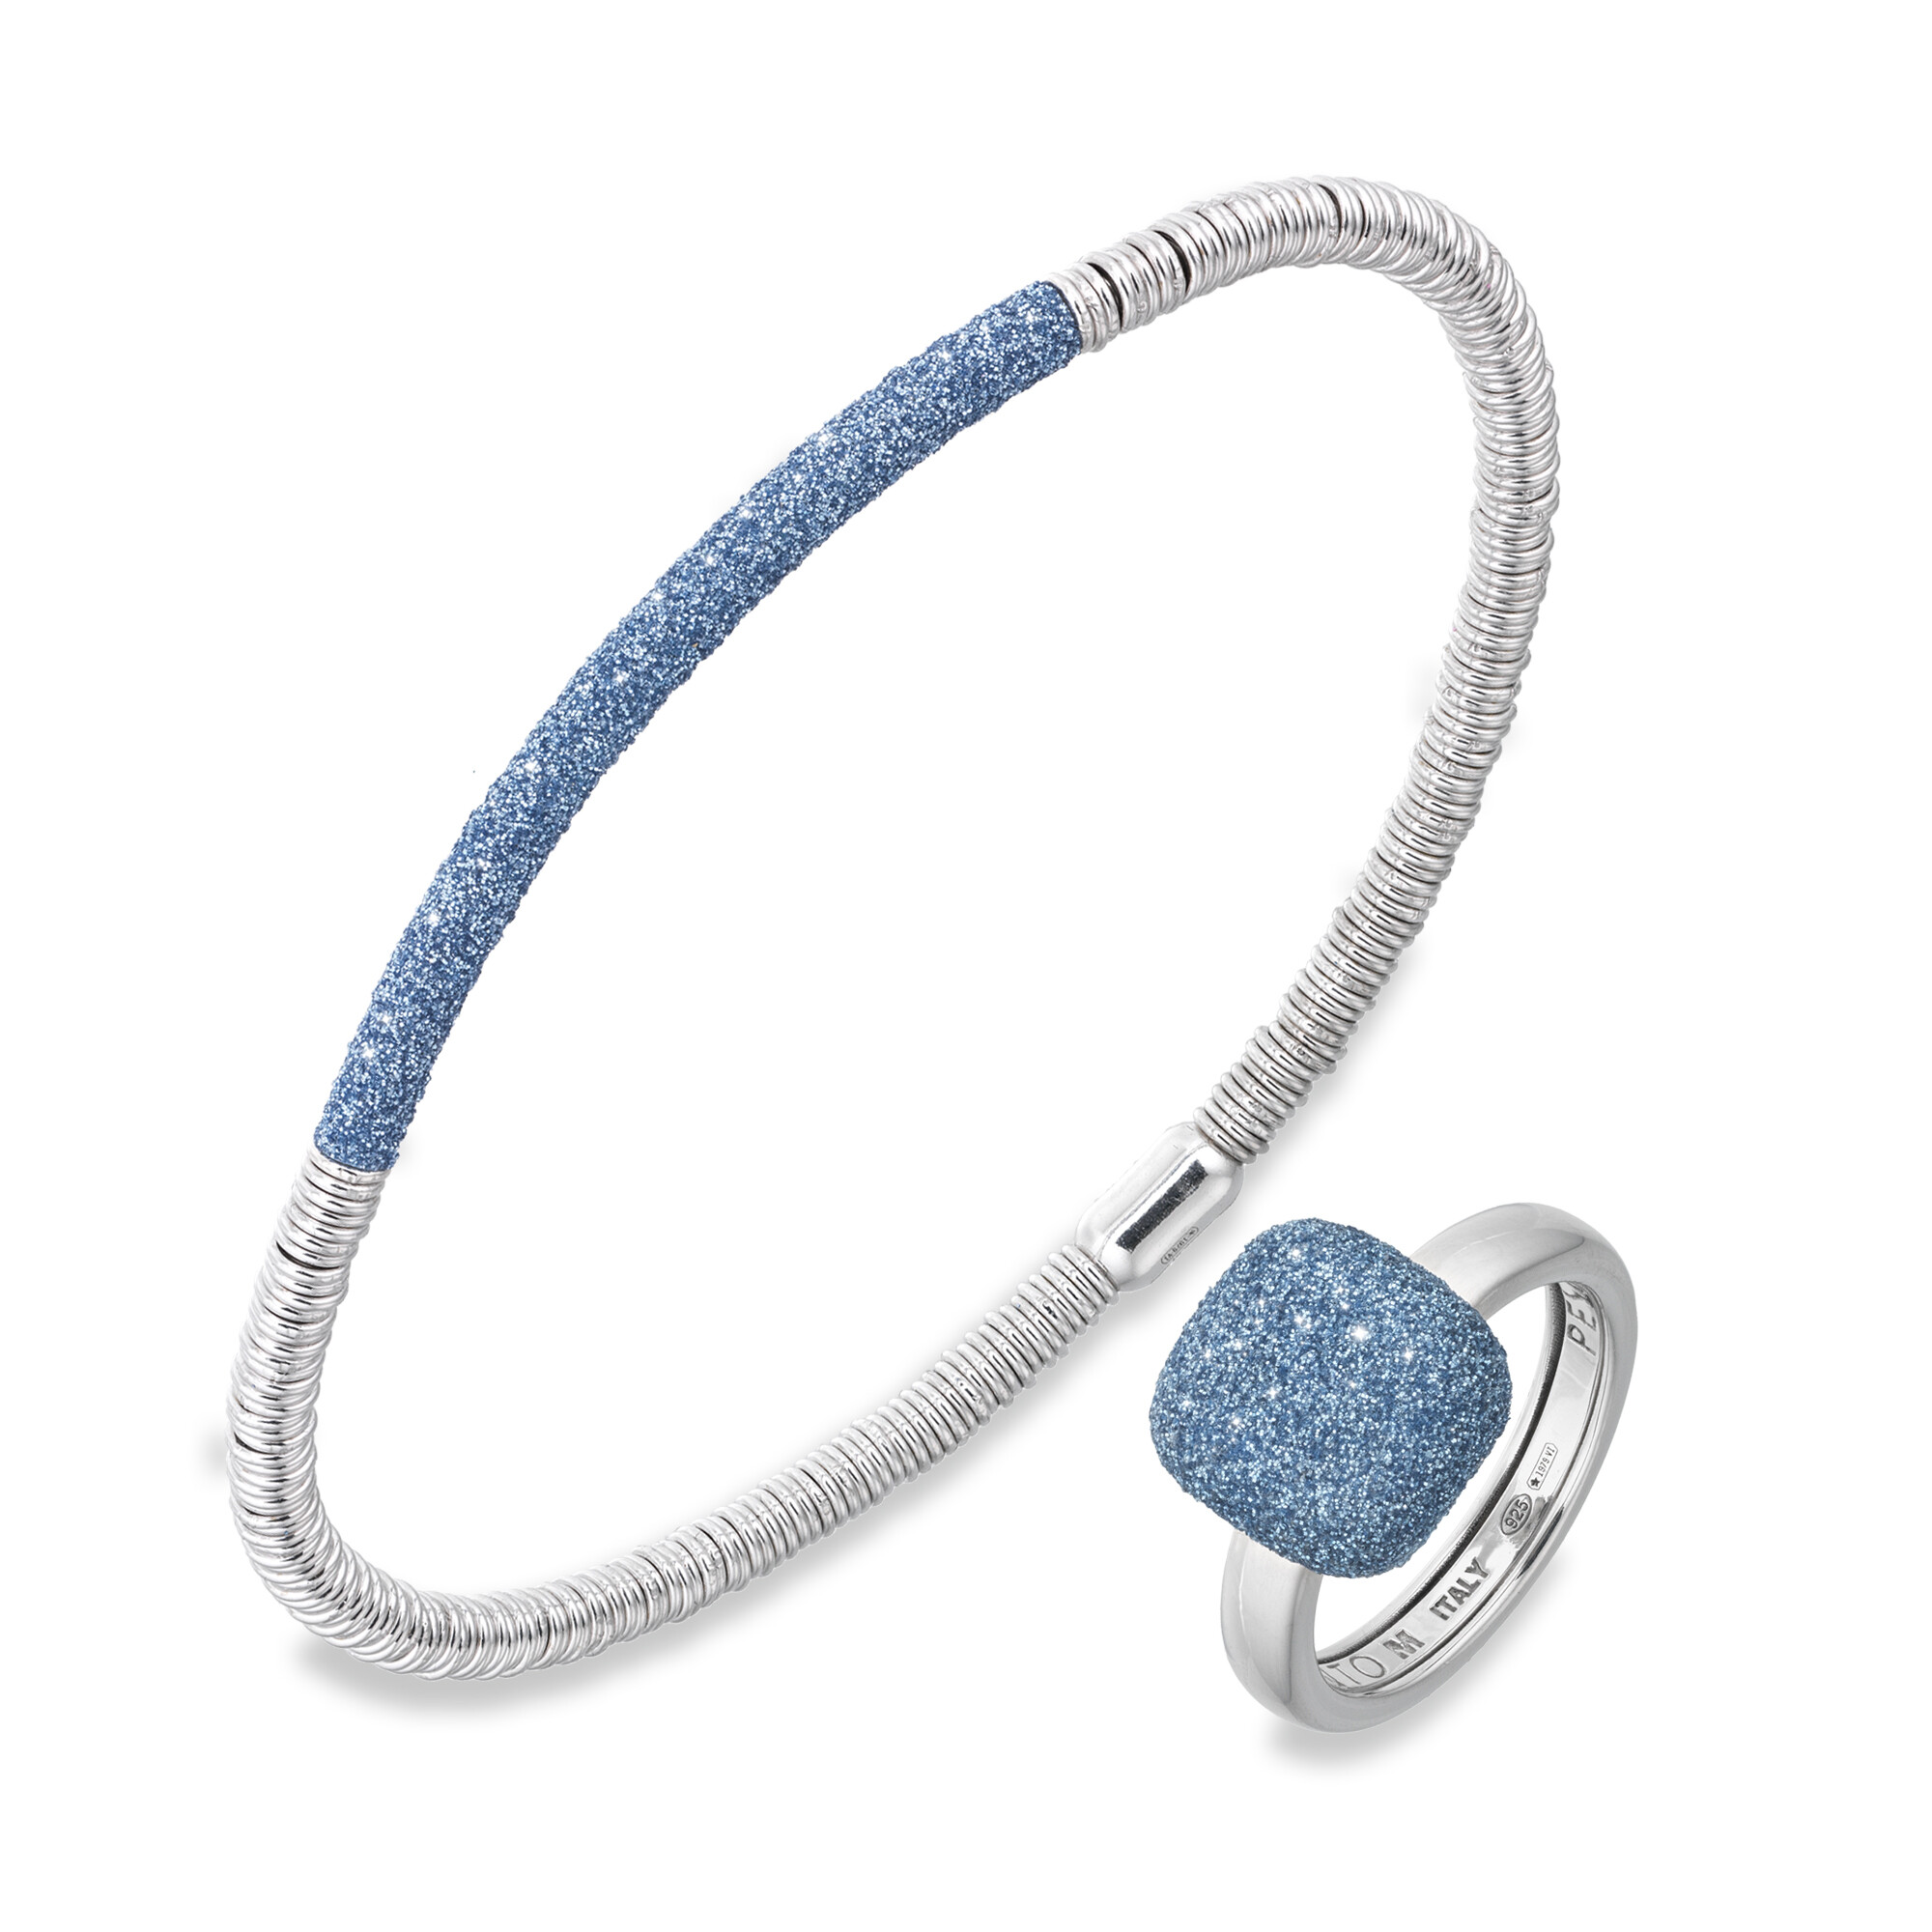 Una pulsera y un anillo plateado con polvo di sogni pesavento color azul. Fondo blanco. Disponibles en Joyeria Marga Mira